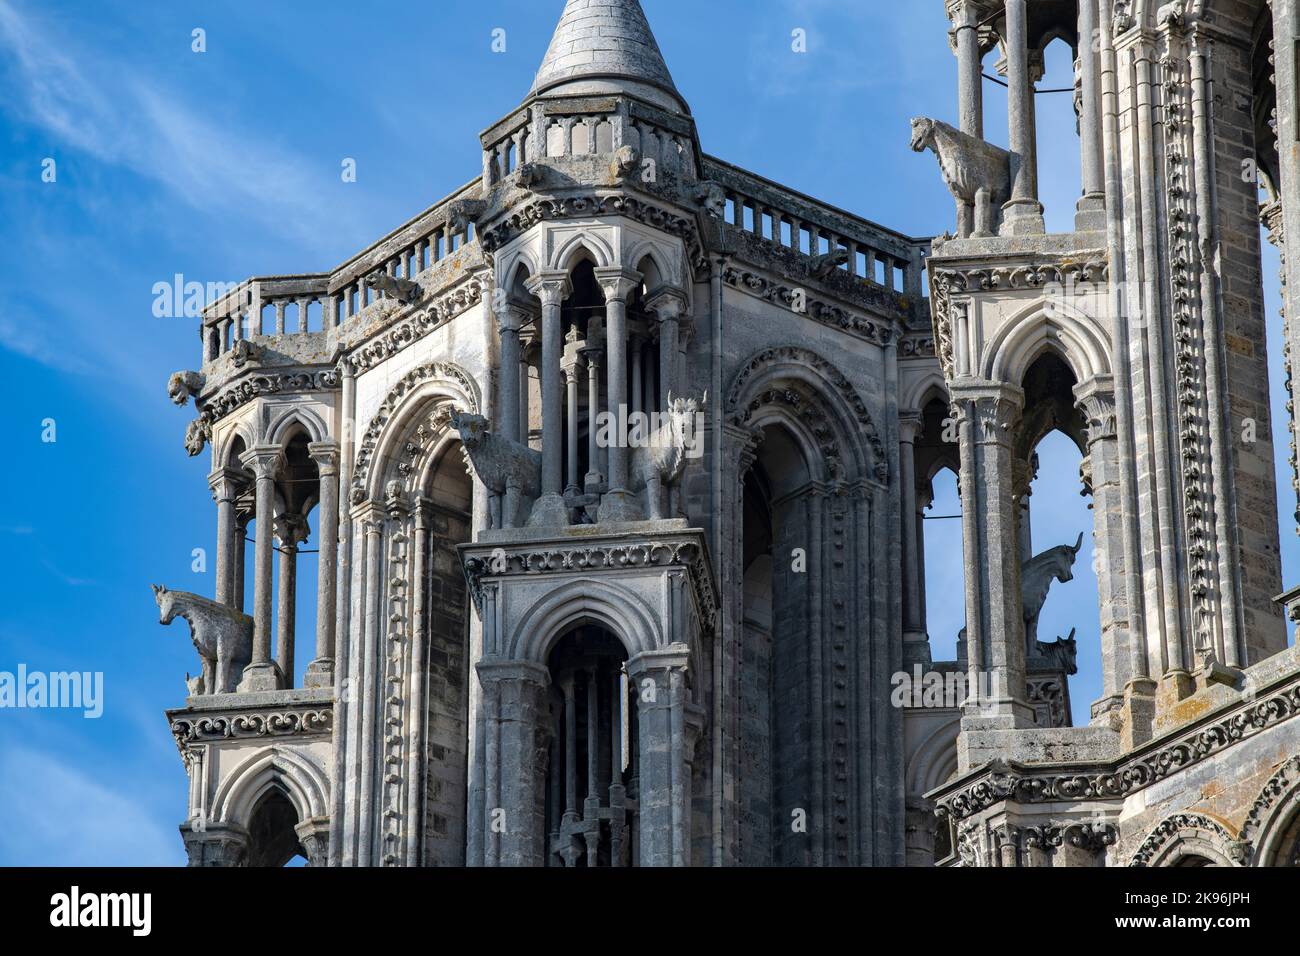 La Cathédrale de Laon (Cathédrale notre-Dame de Laon) est une église catholique romaine située à Laon, Aisne, hauts-de-France, France. Construit dans le douzième et t Banque D'Images